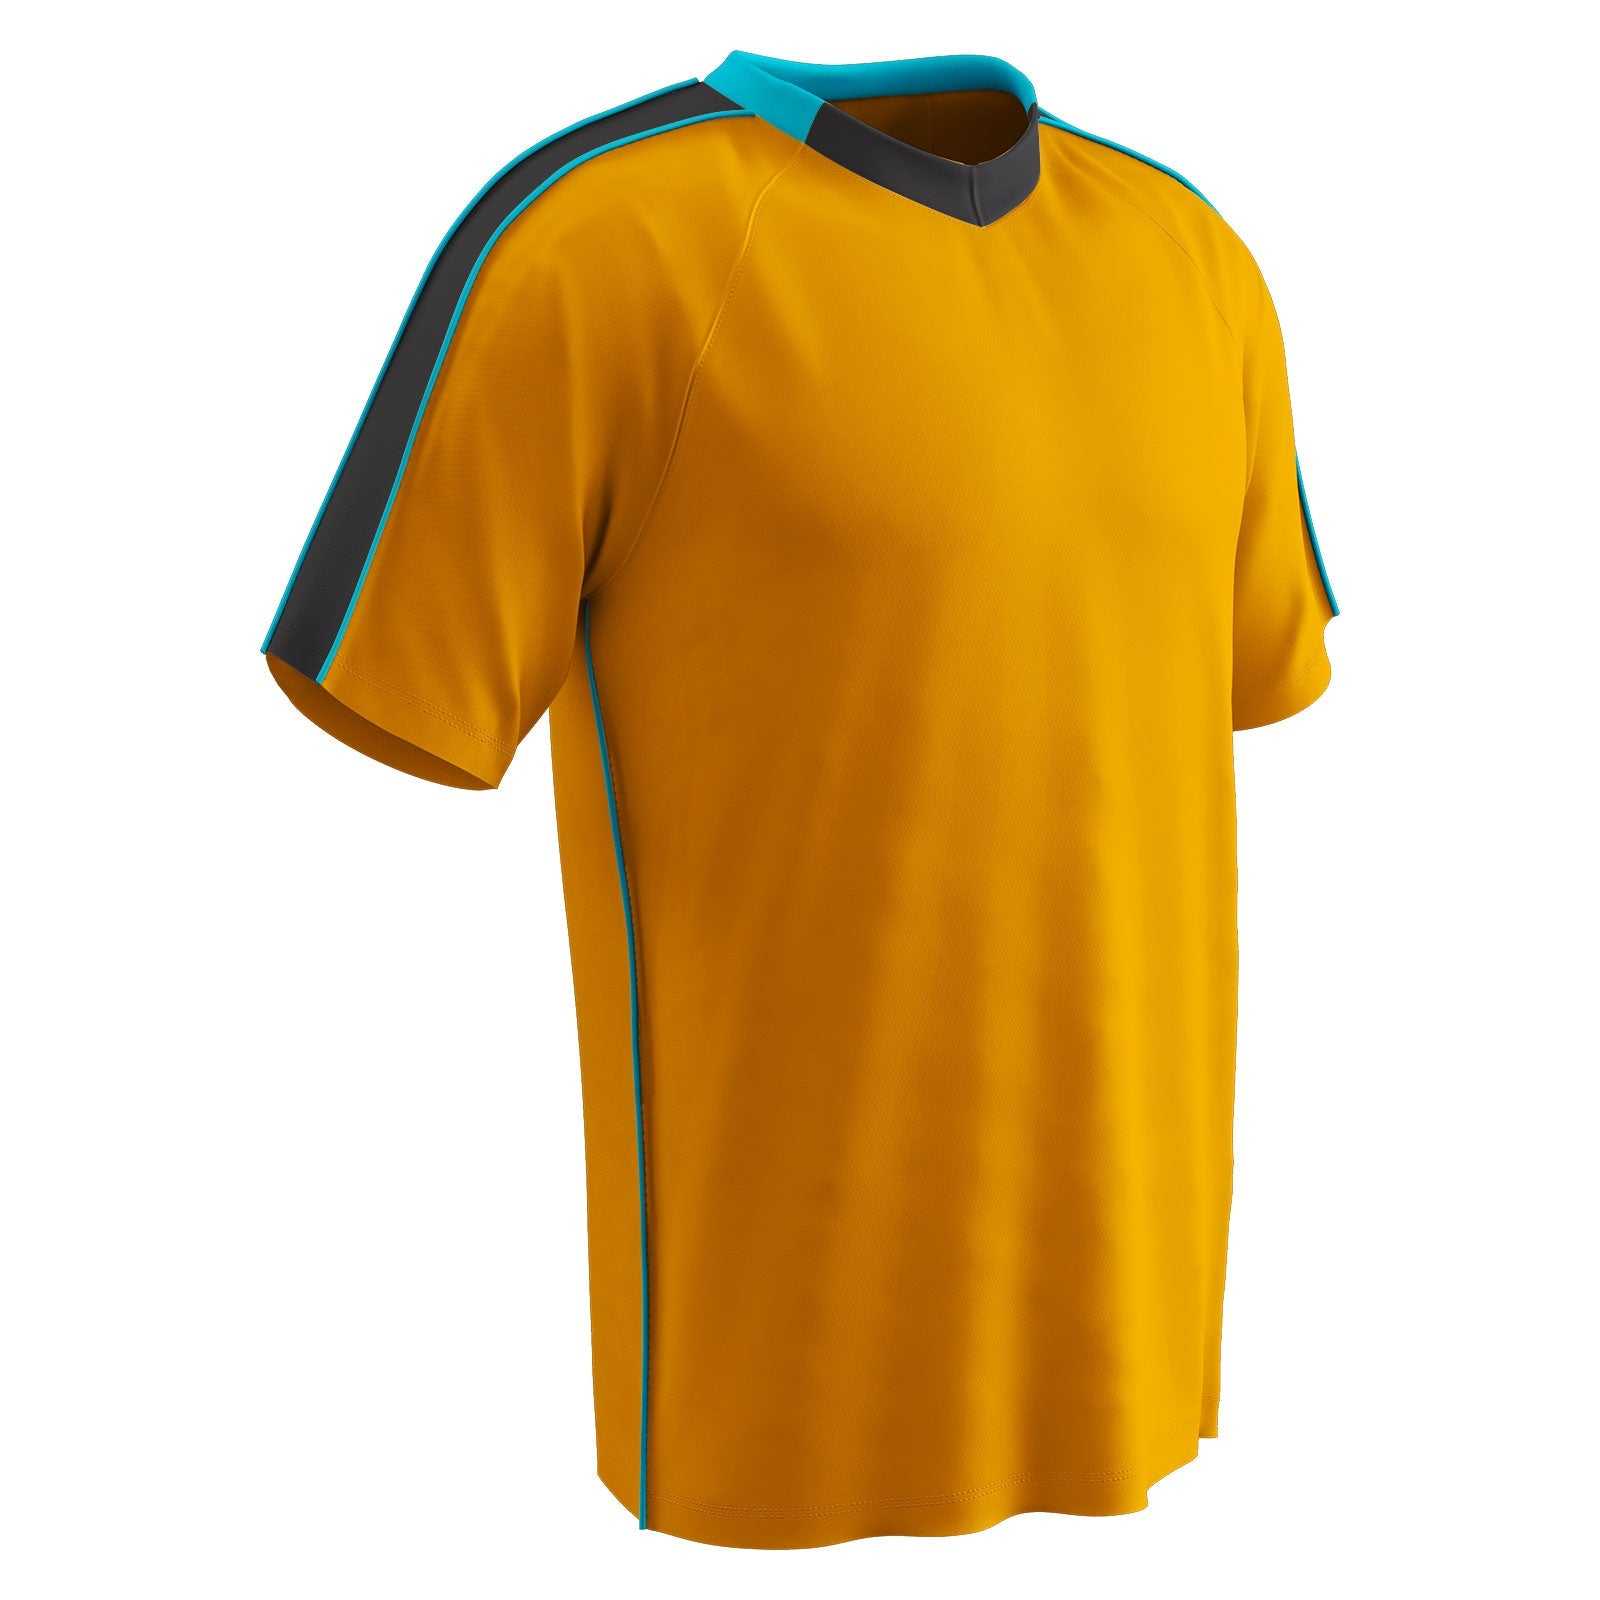 Champro SJ20 Mark Soccer Jersey - Neon Orange Black Neon Blue - HIT a Double